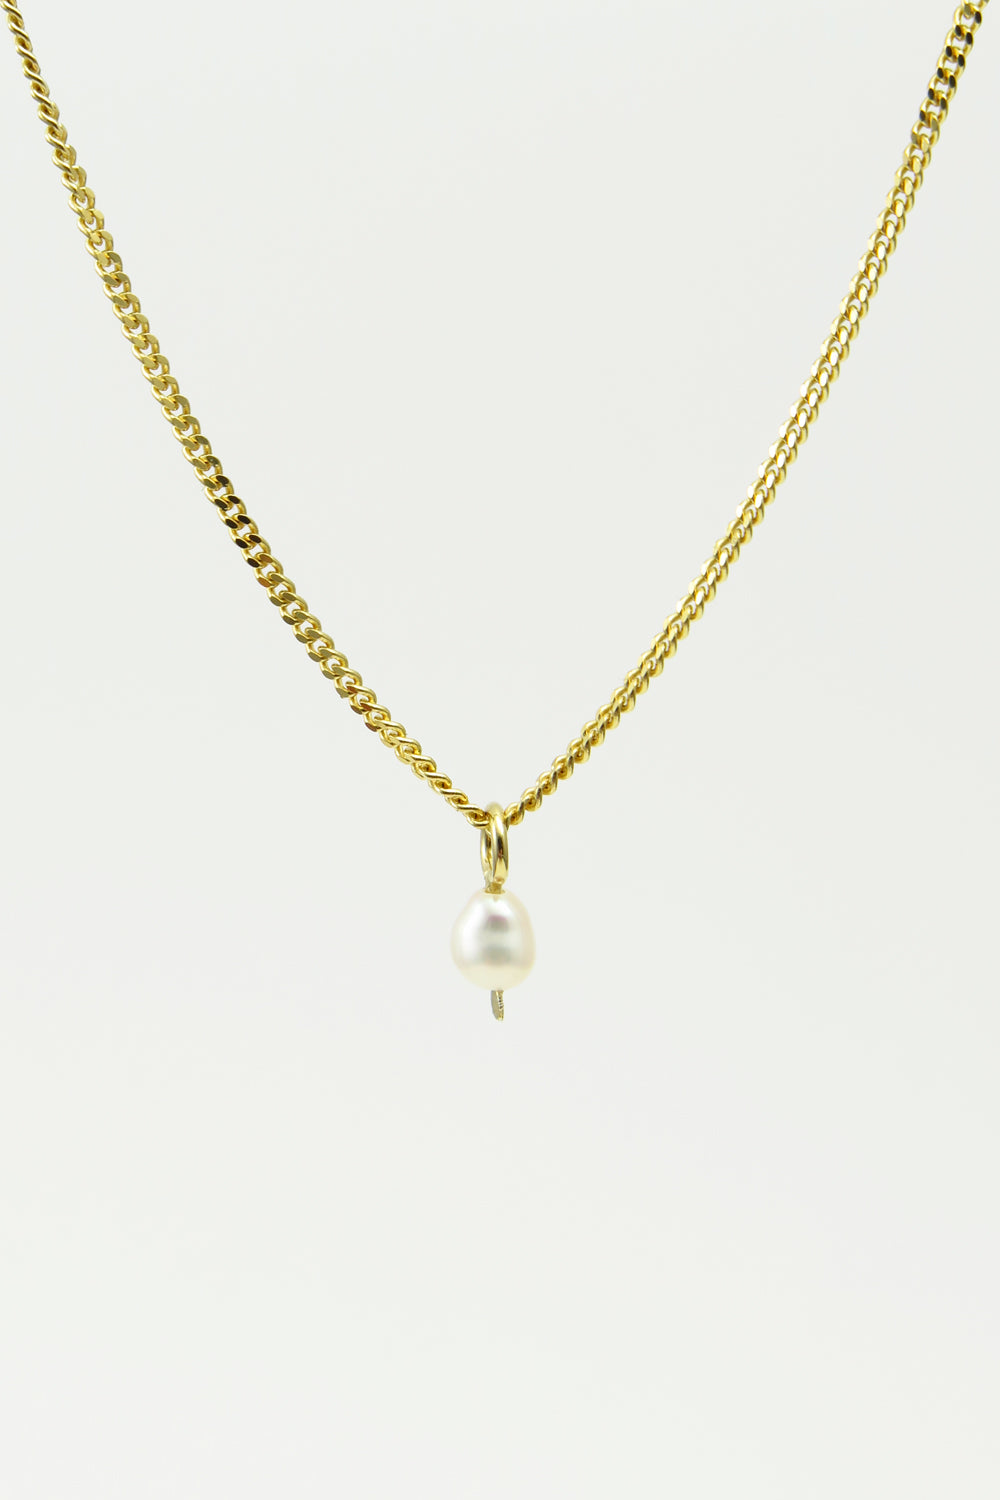 Pearl necklace, vermeil